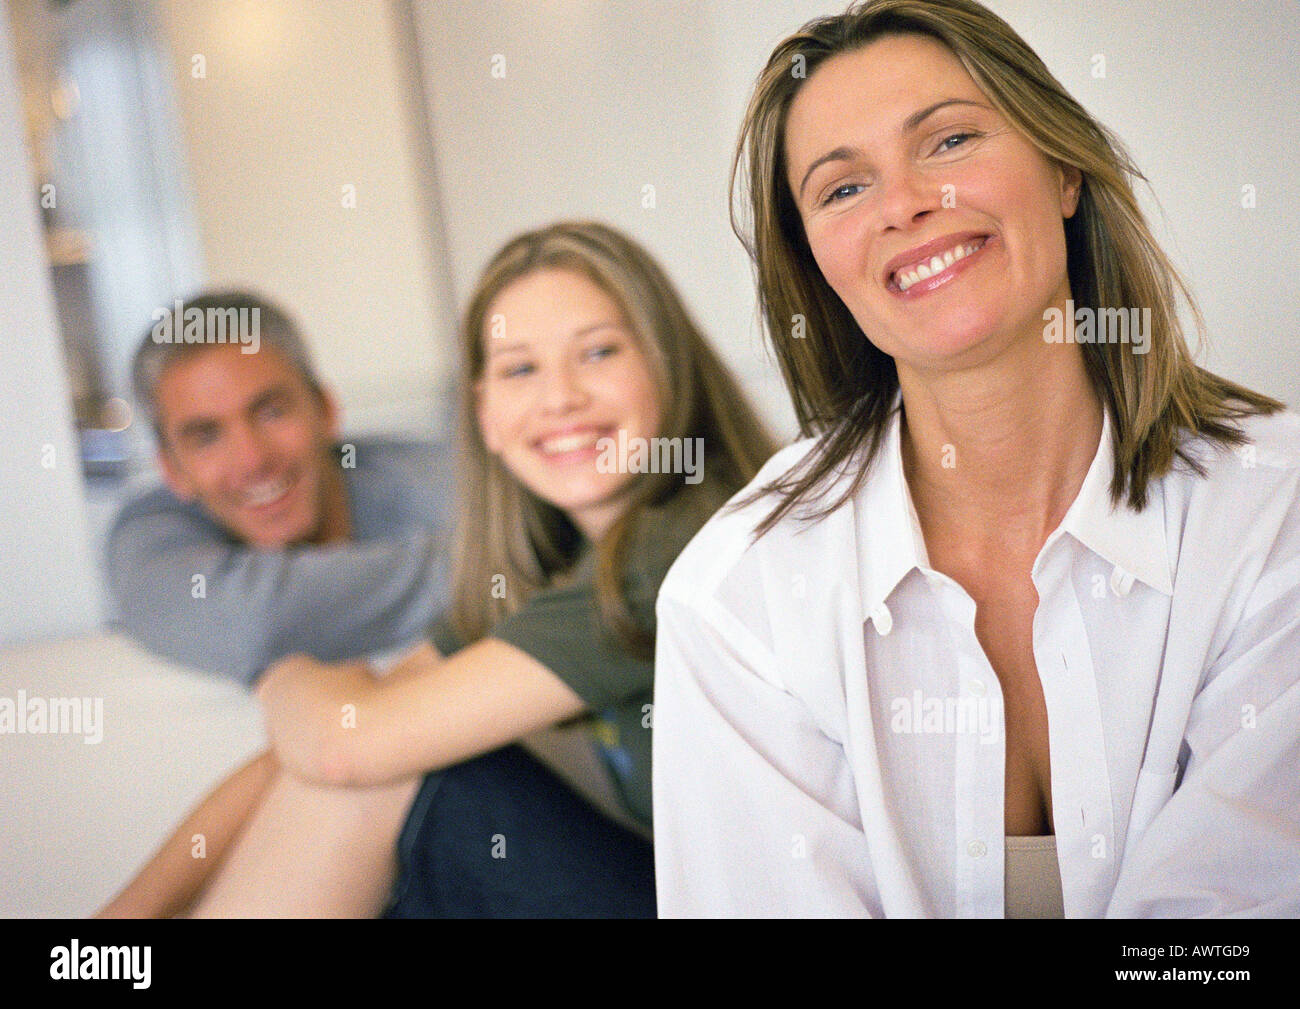 Jeune femme et l'homme en souriant et à la recherche dans le même sens, woman smiling en premier plan, la tête et épaules Banque D'Images